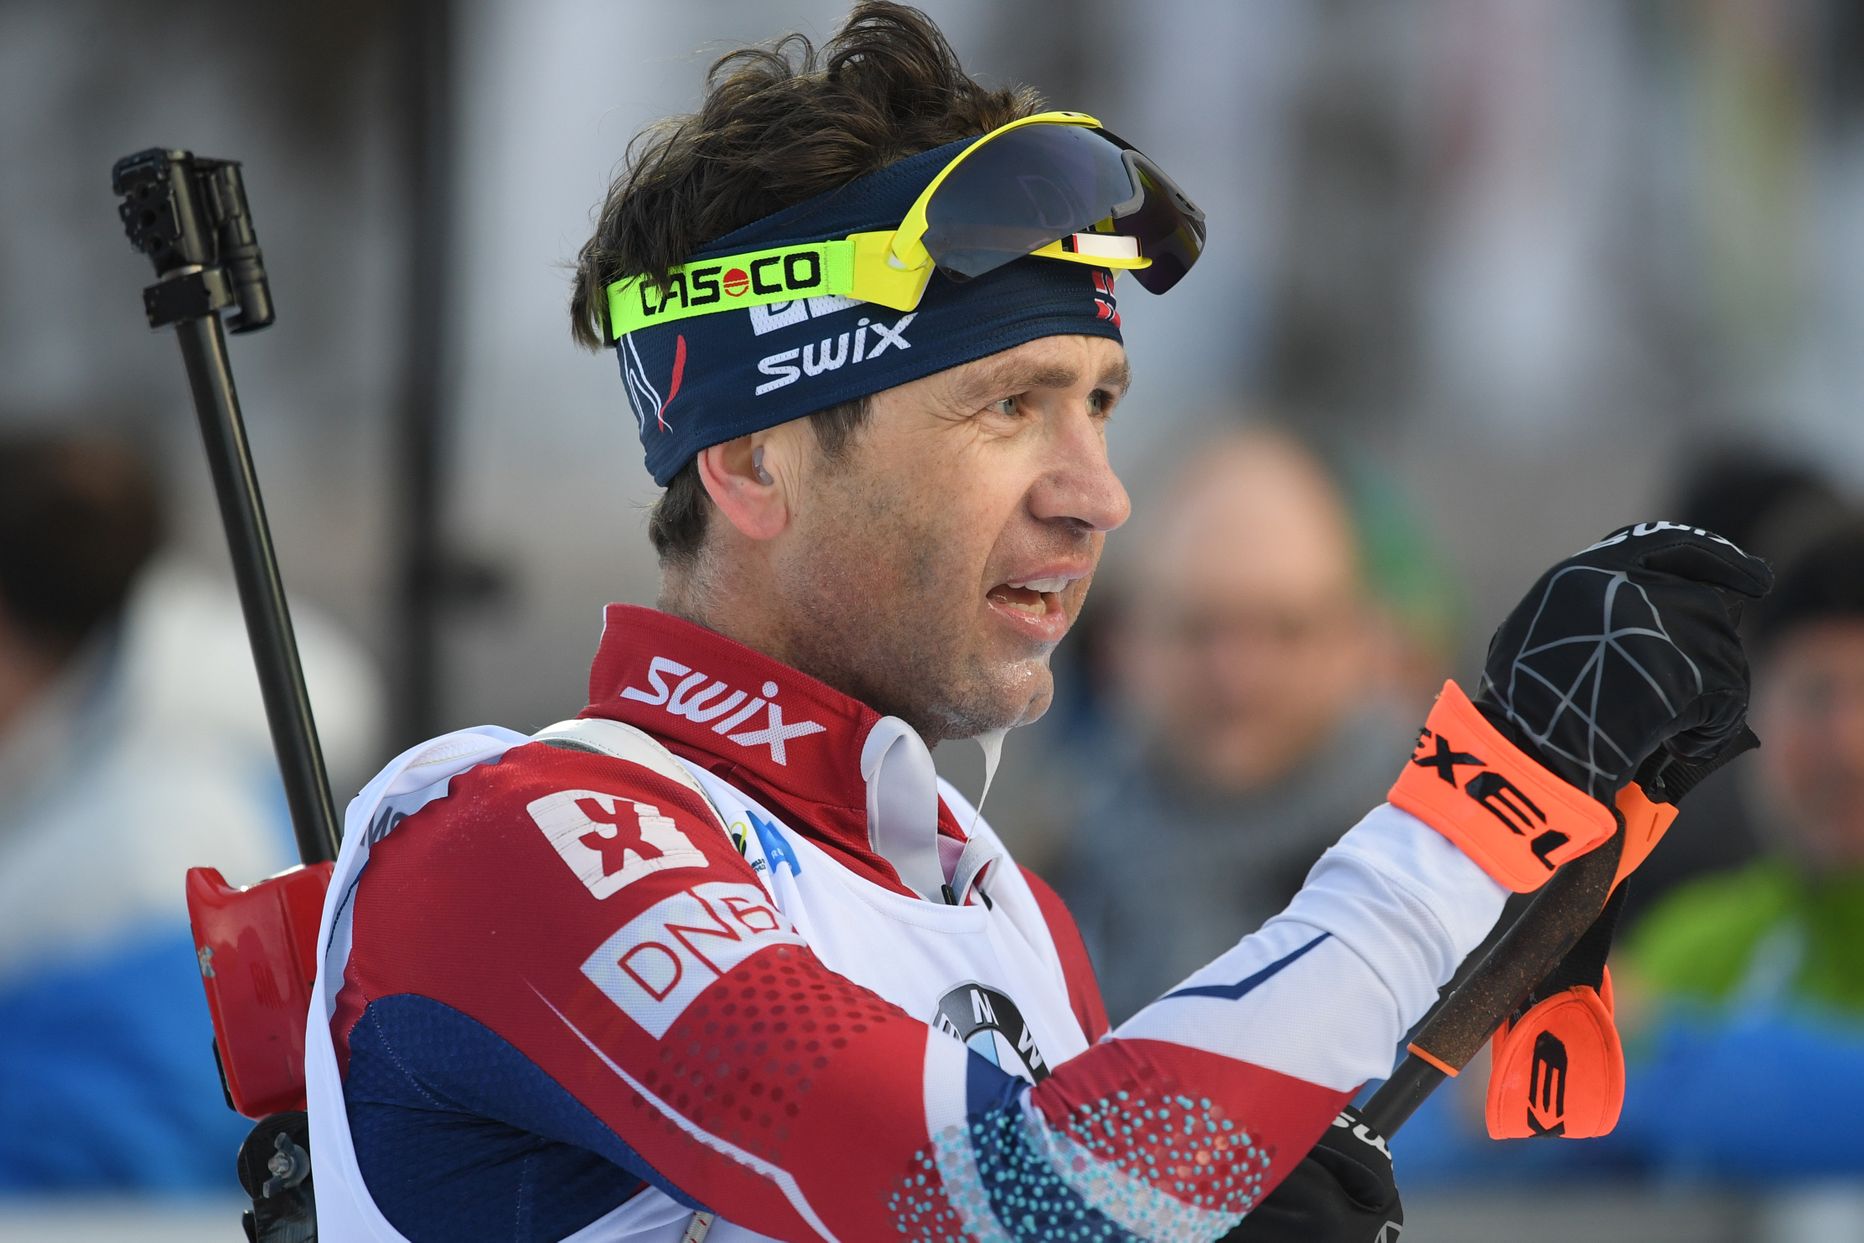 Ole Einar Bjørndalenil jääb elu kaheksandatel olümpiamängudele sõitmata.